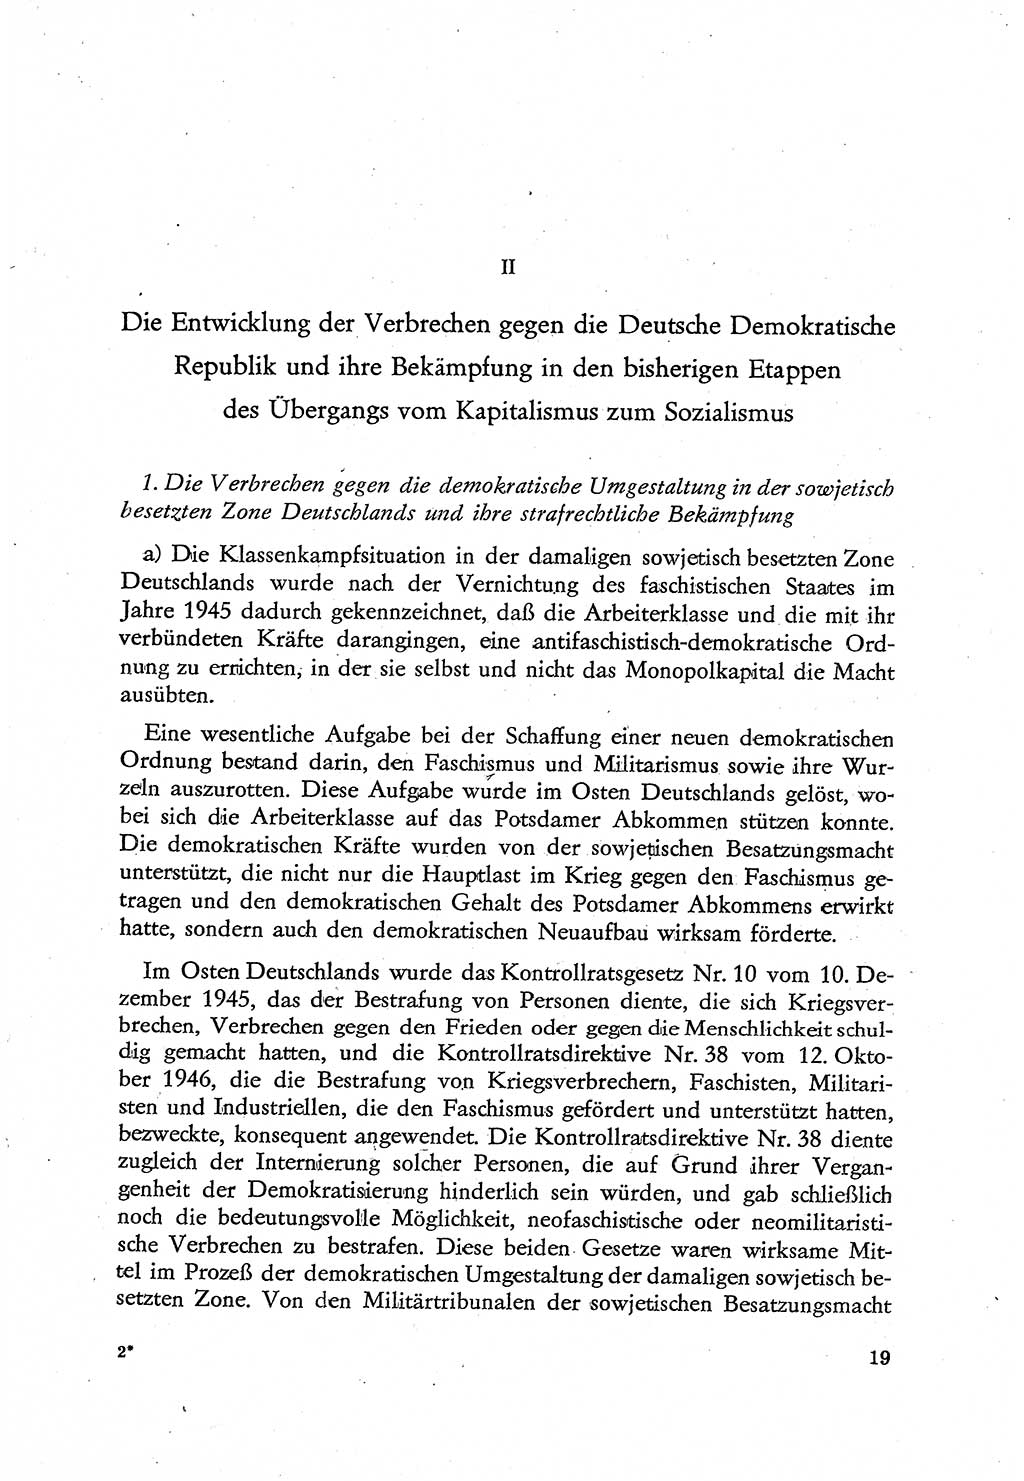 Beiträge zum Strafrecht [Deutsche Demokratische Republik (DDR)], Staatsverbrechen 1959, Seite 19 (Beitr. Strafr. DDR St.-Verbr. 1959, S. 19)